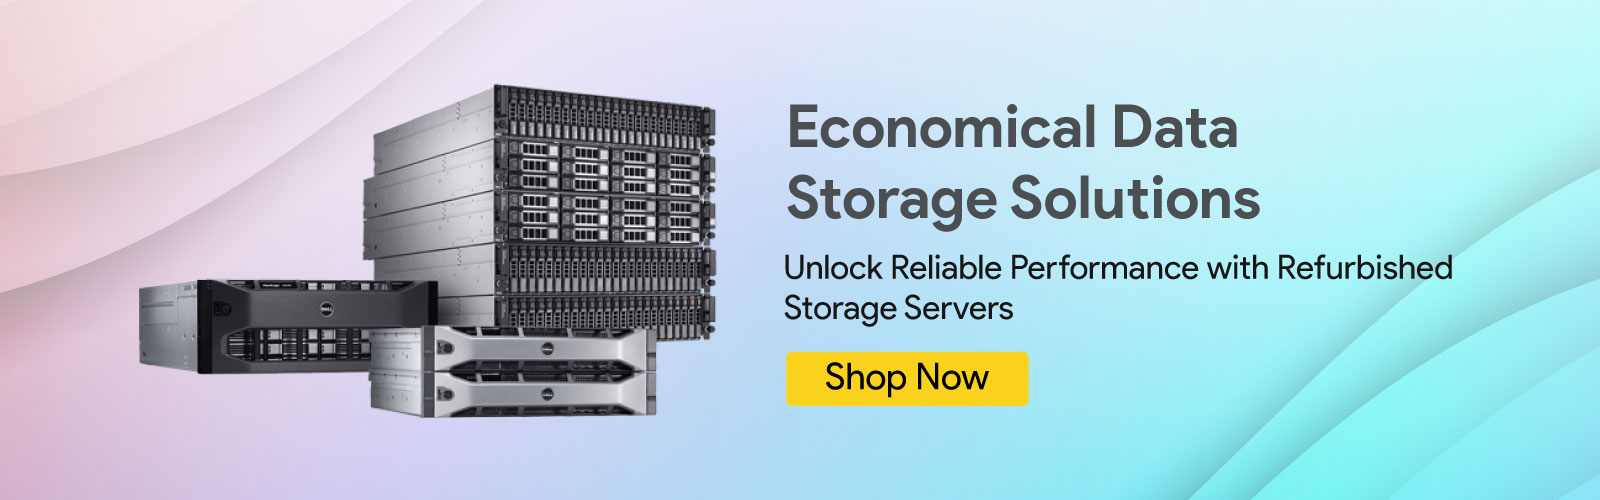 Refurbished-Storage-Server-Price-List